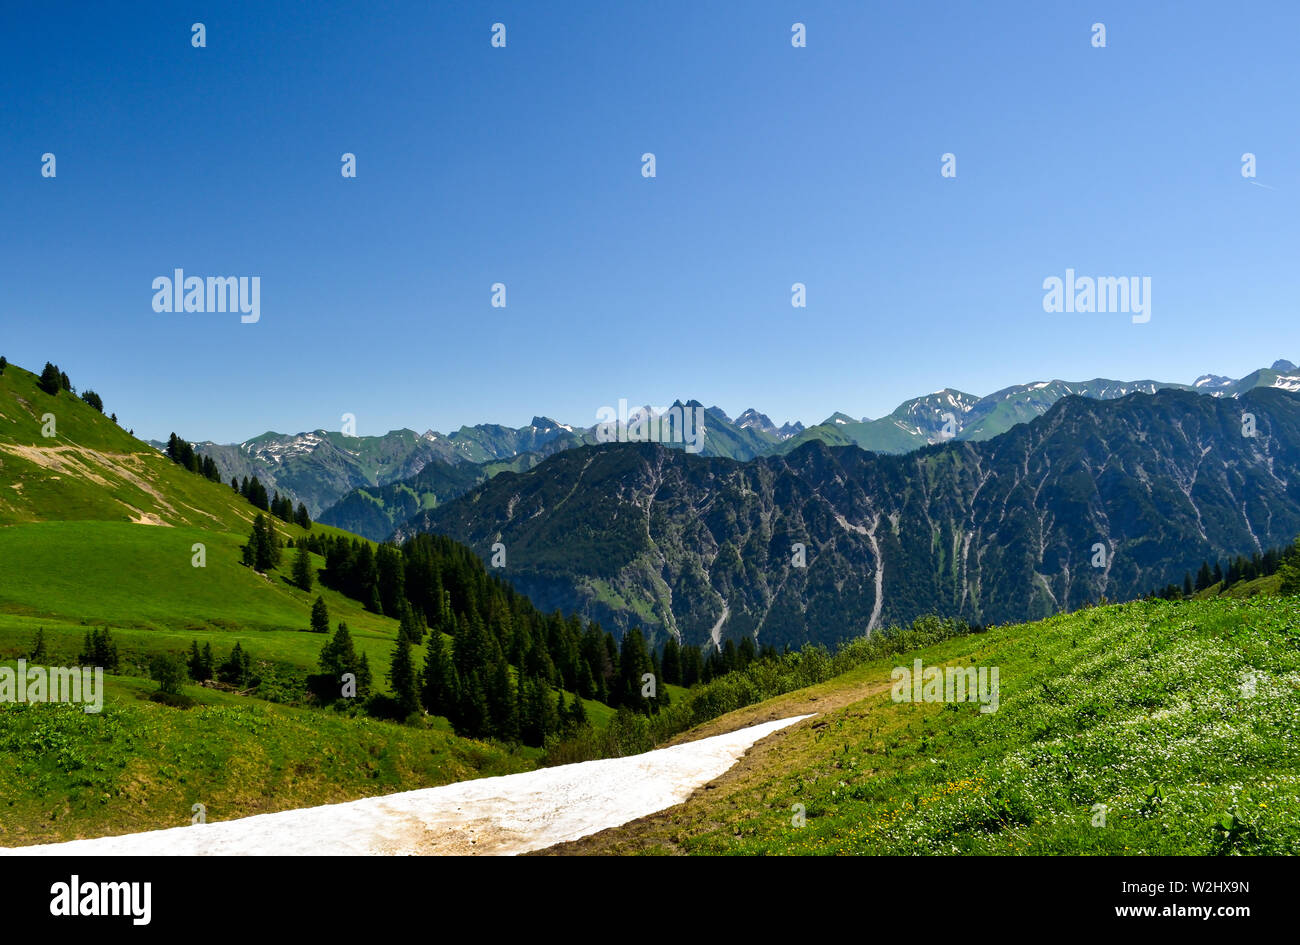 Idílico paisaje de montaña en los Alpes. Foto de stock